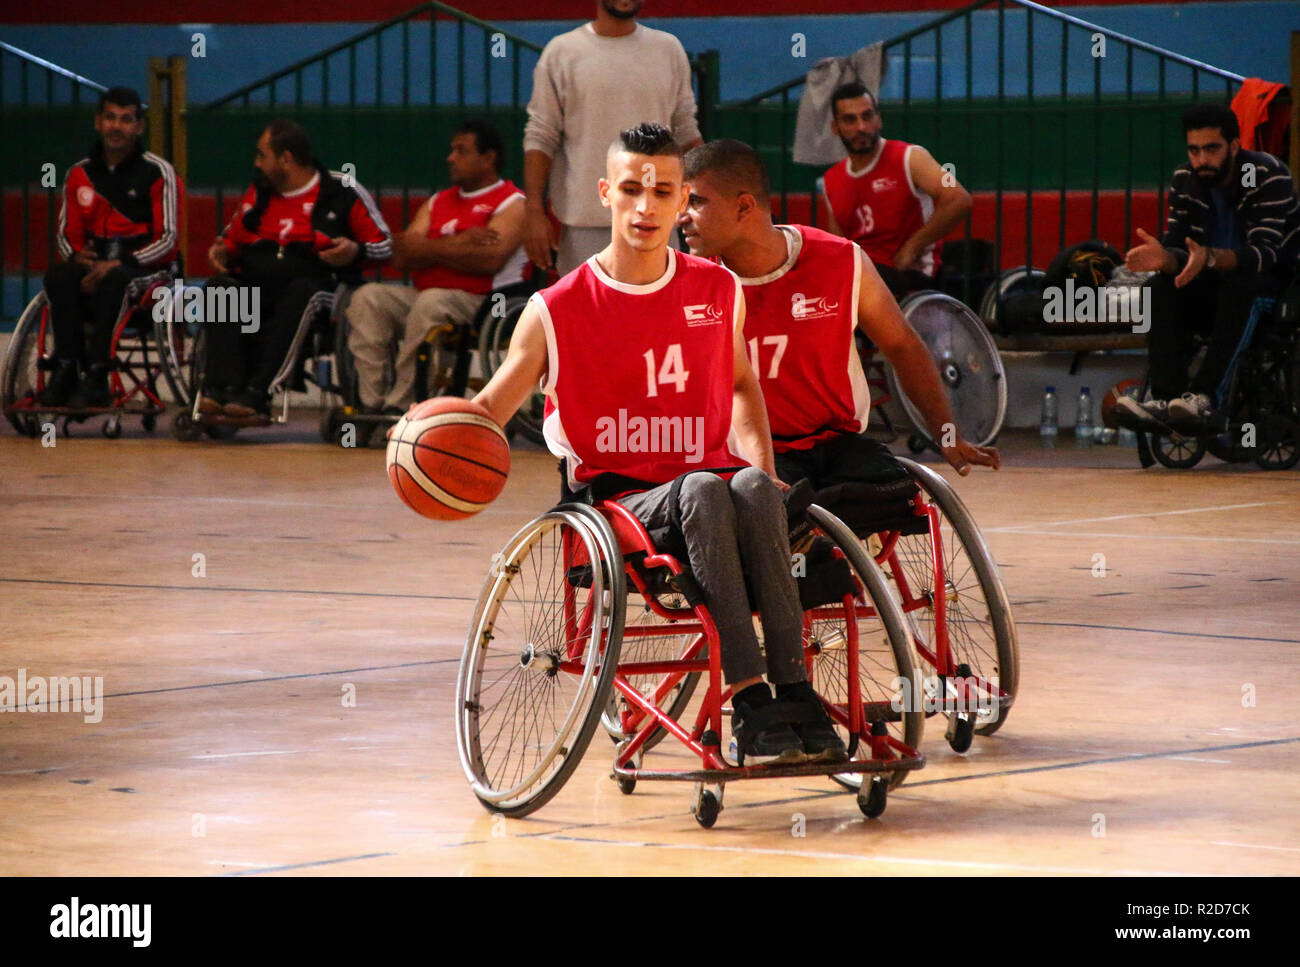 Al Hilal Sports Club giocatore visto in azione durante le finali della carrozzina campionato di basket a Saad Sayel Hall di Gaza City. Foto Stock